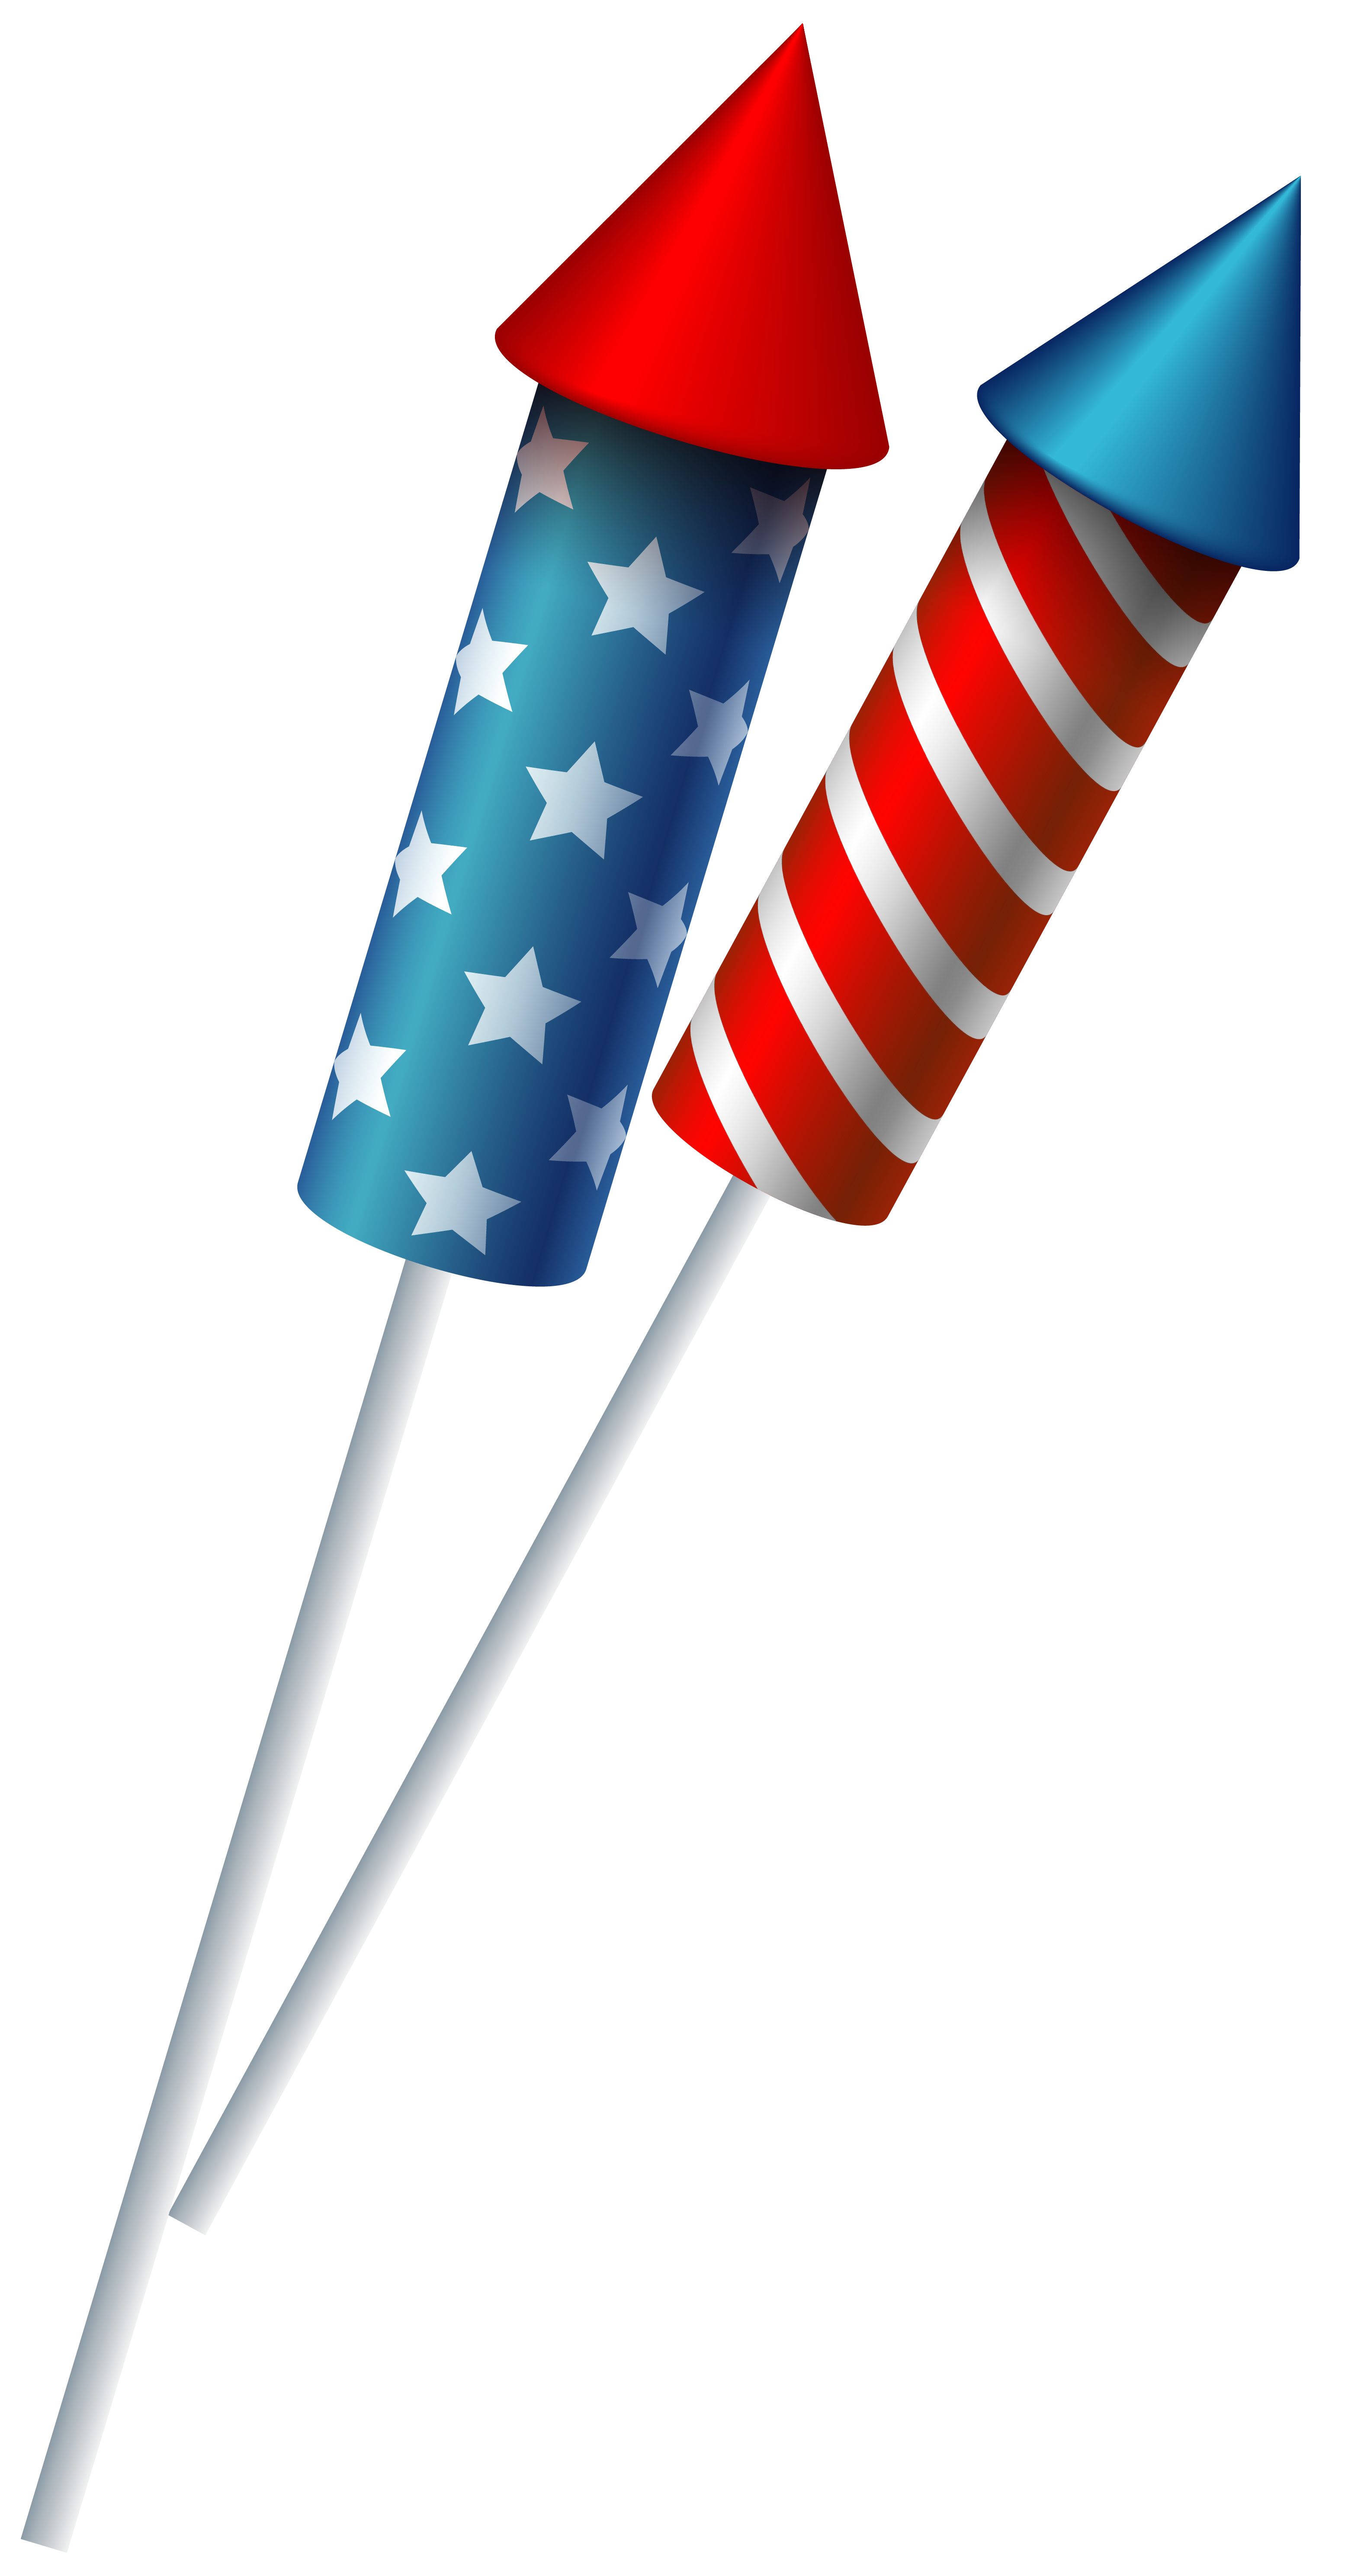 USA Sparkler Fireworks PNG Clipart Image 